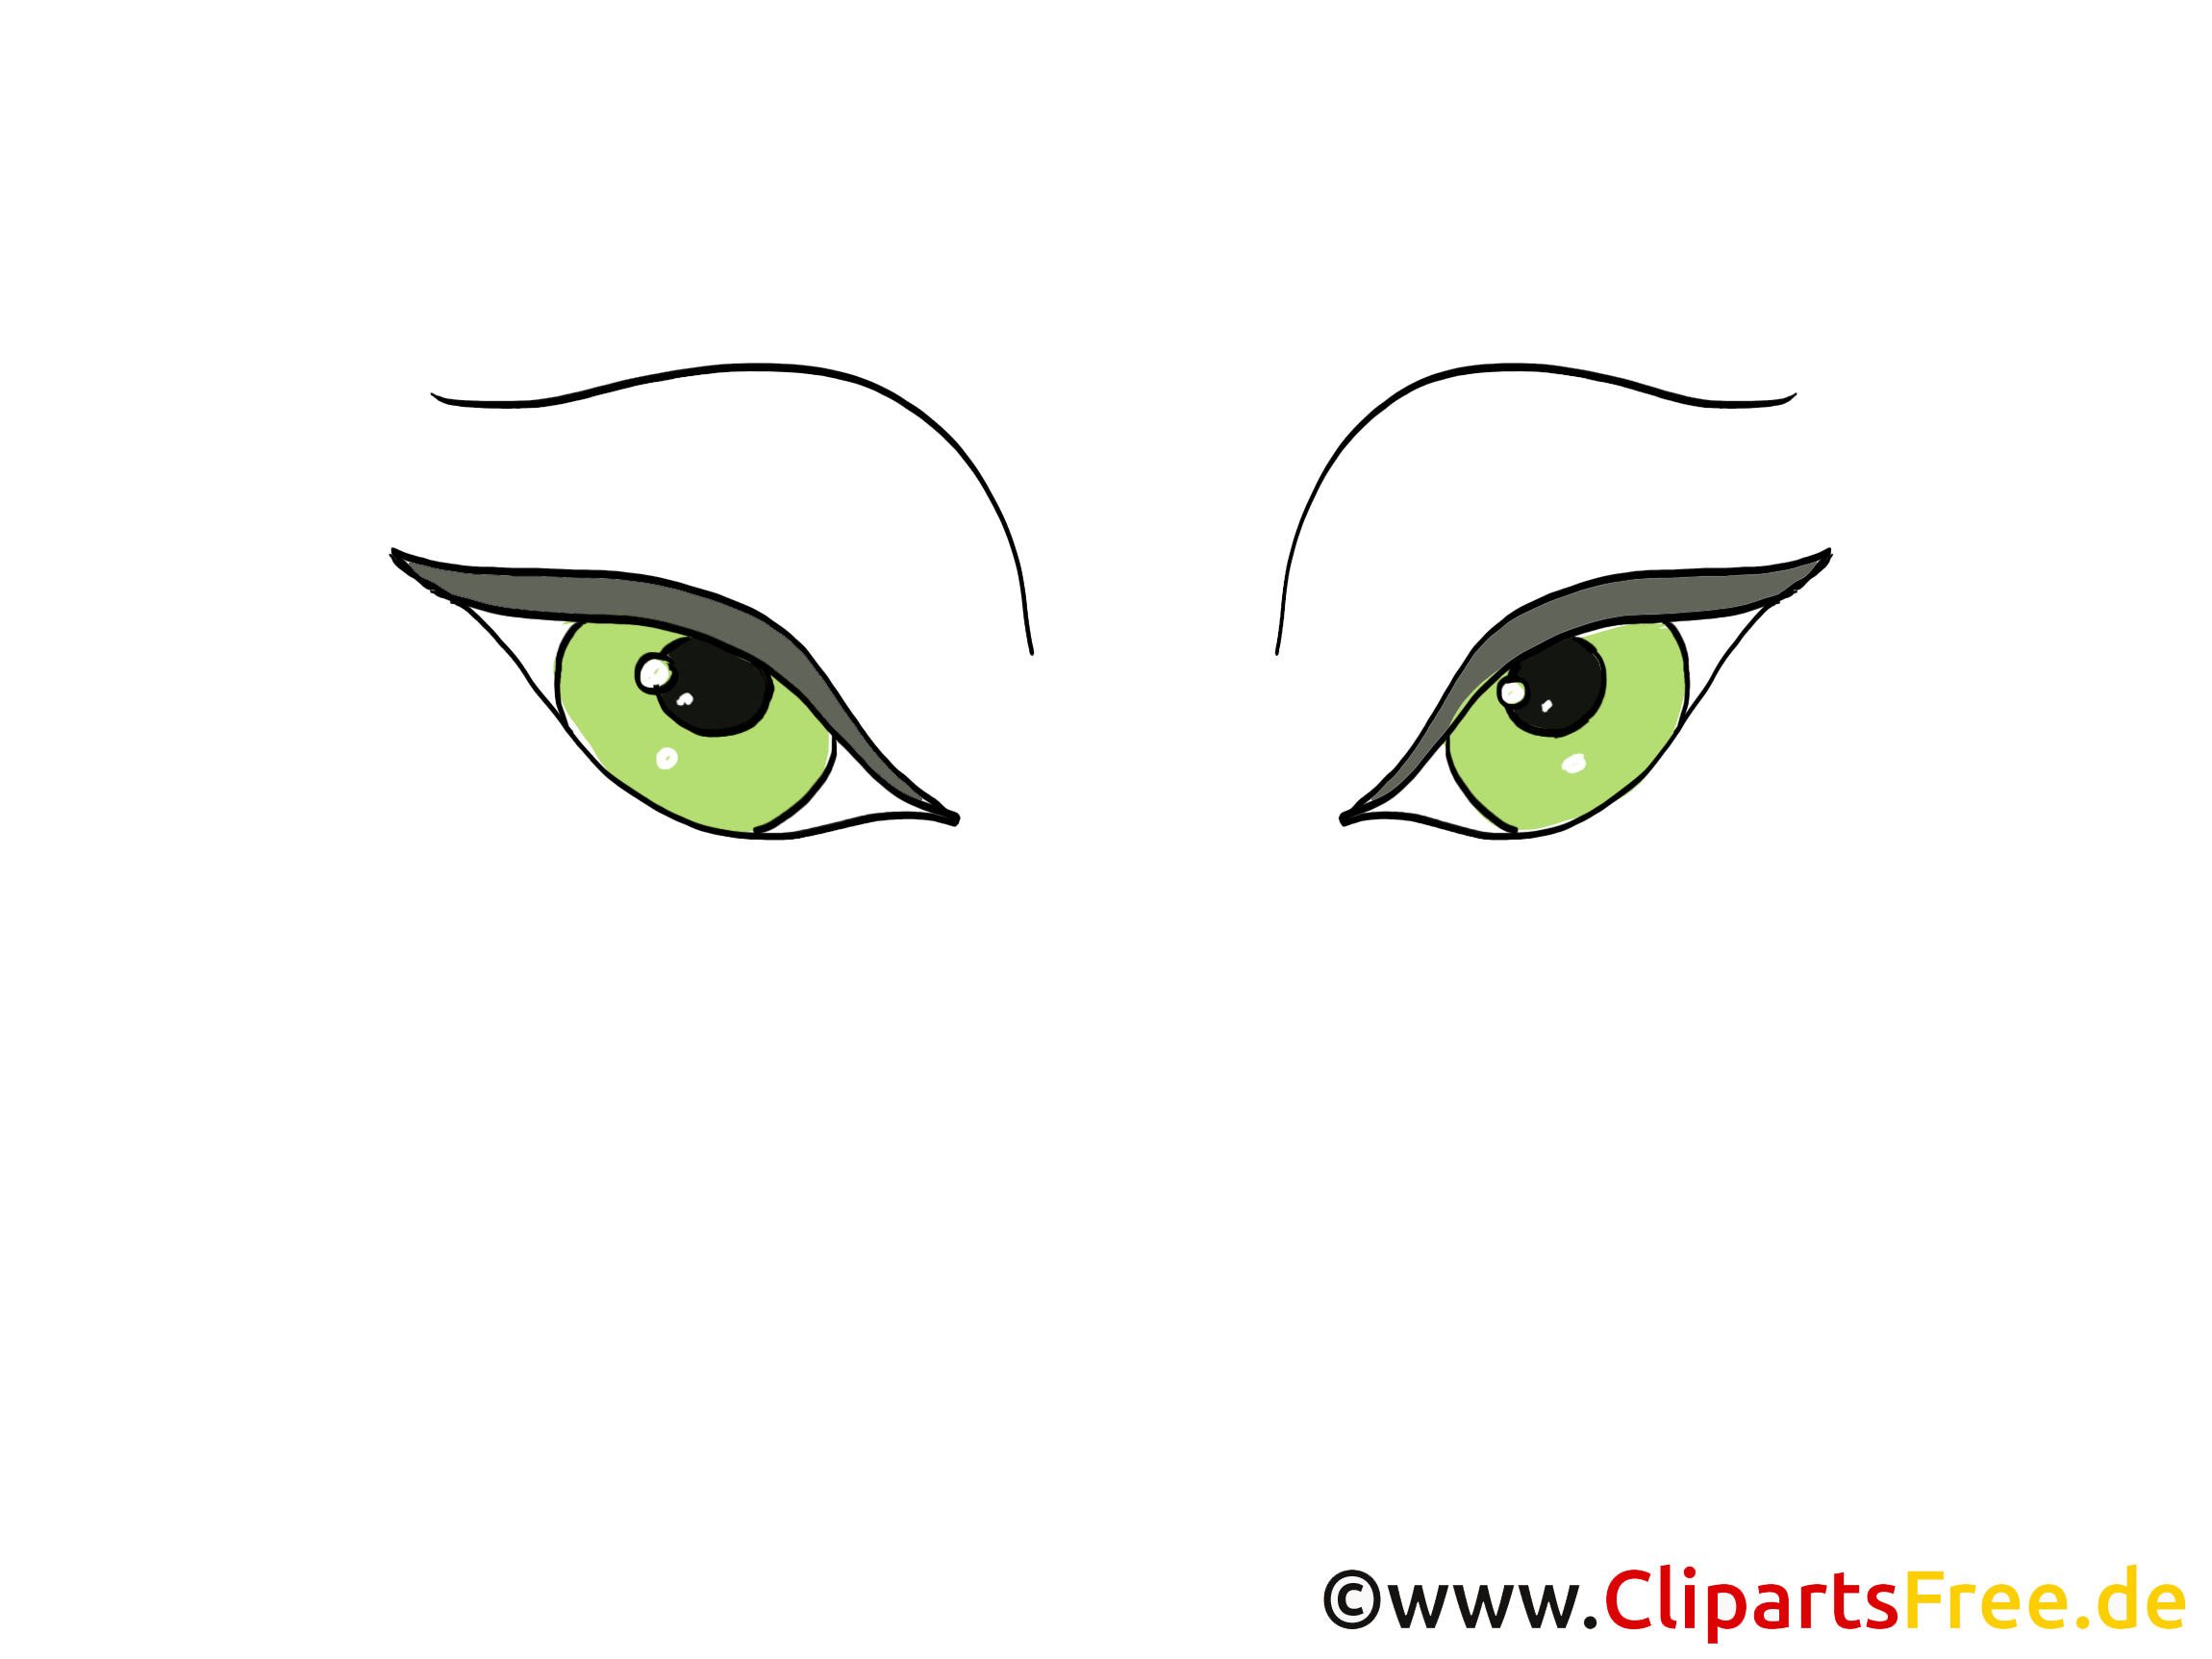 Verts yeux cliparts gratuis – Dessin images